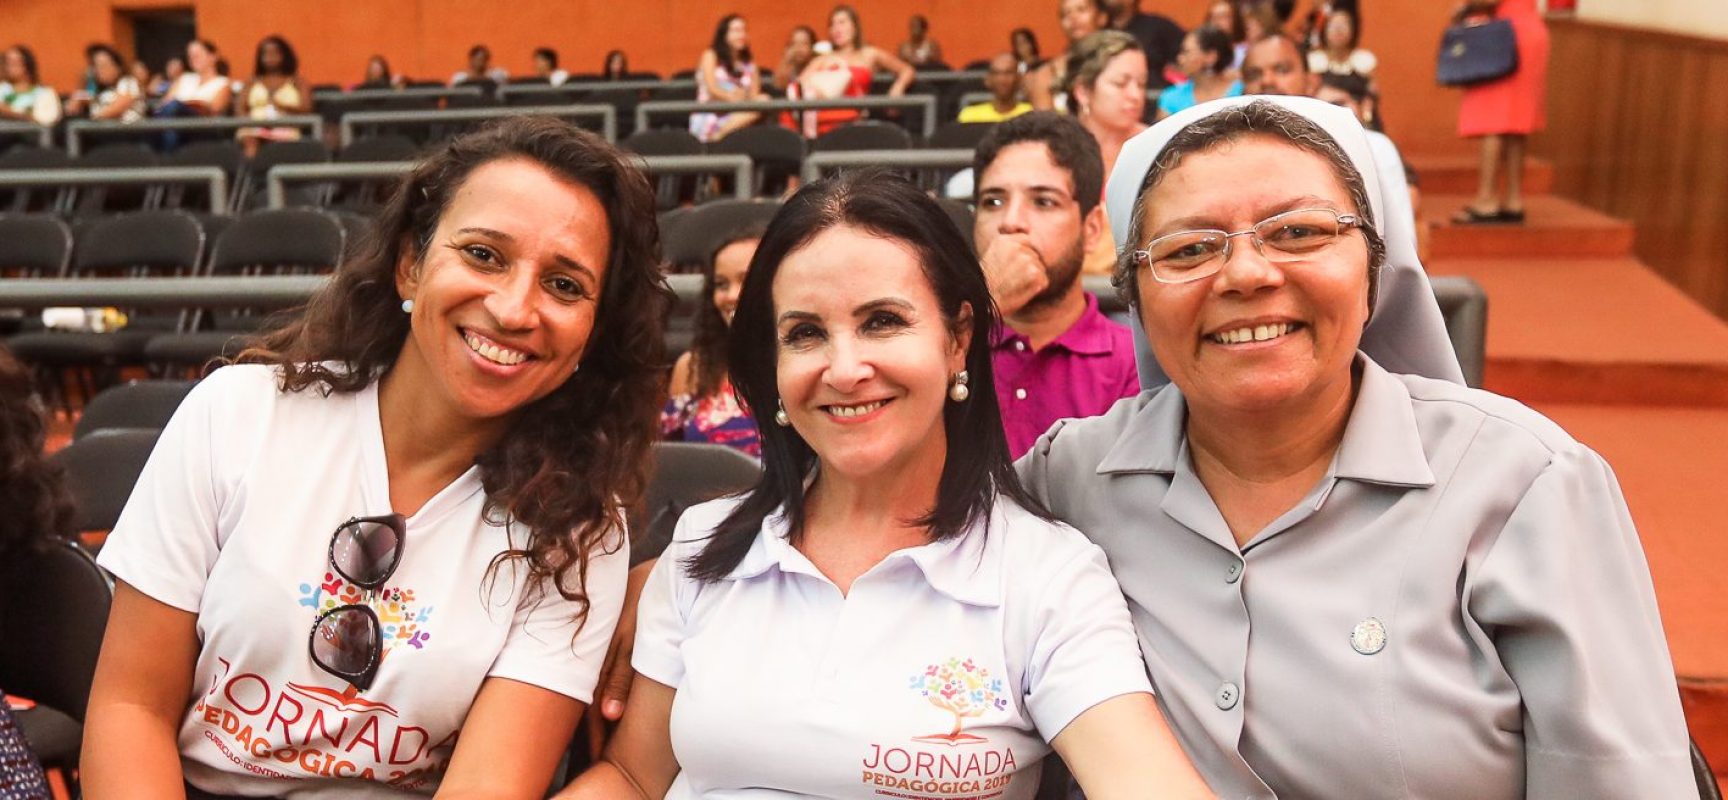 Jornada Pedagógica prepara gestores escolares municipais para ano letivo de 2019